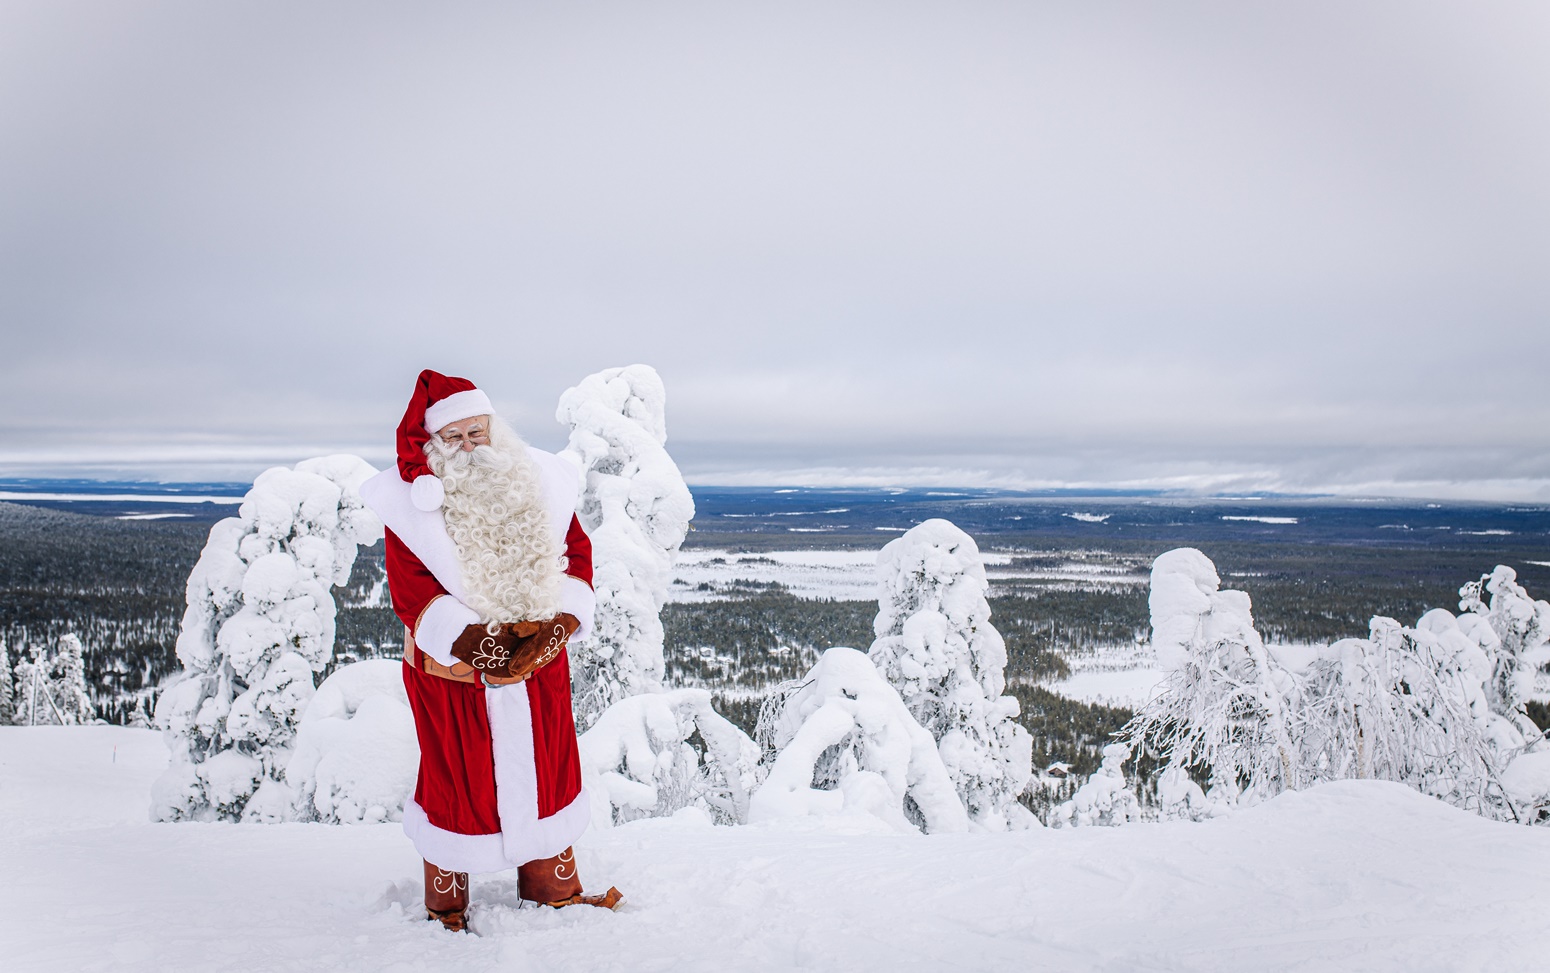 ELFO EXPERIENCE: Acompañamiento Mágico en Tu Viaje a Laponia con Niños